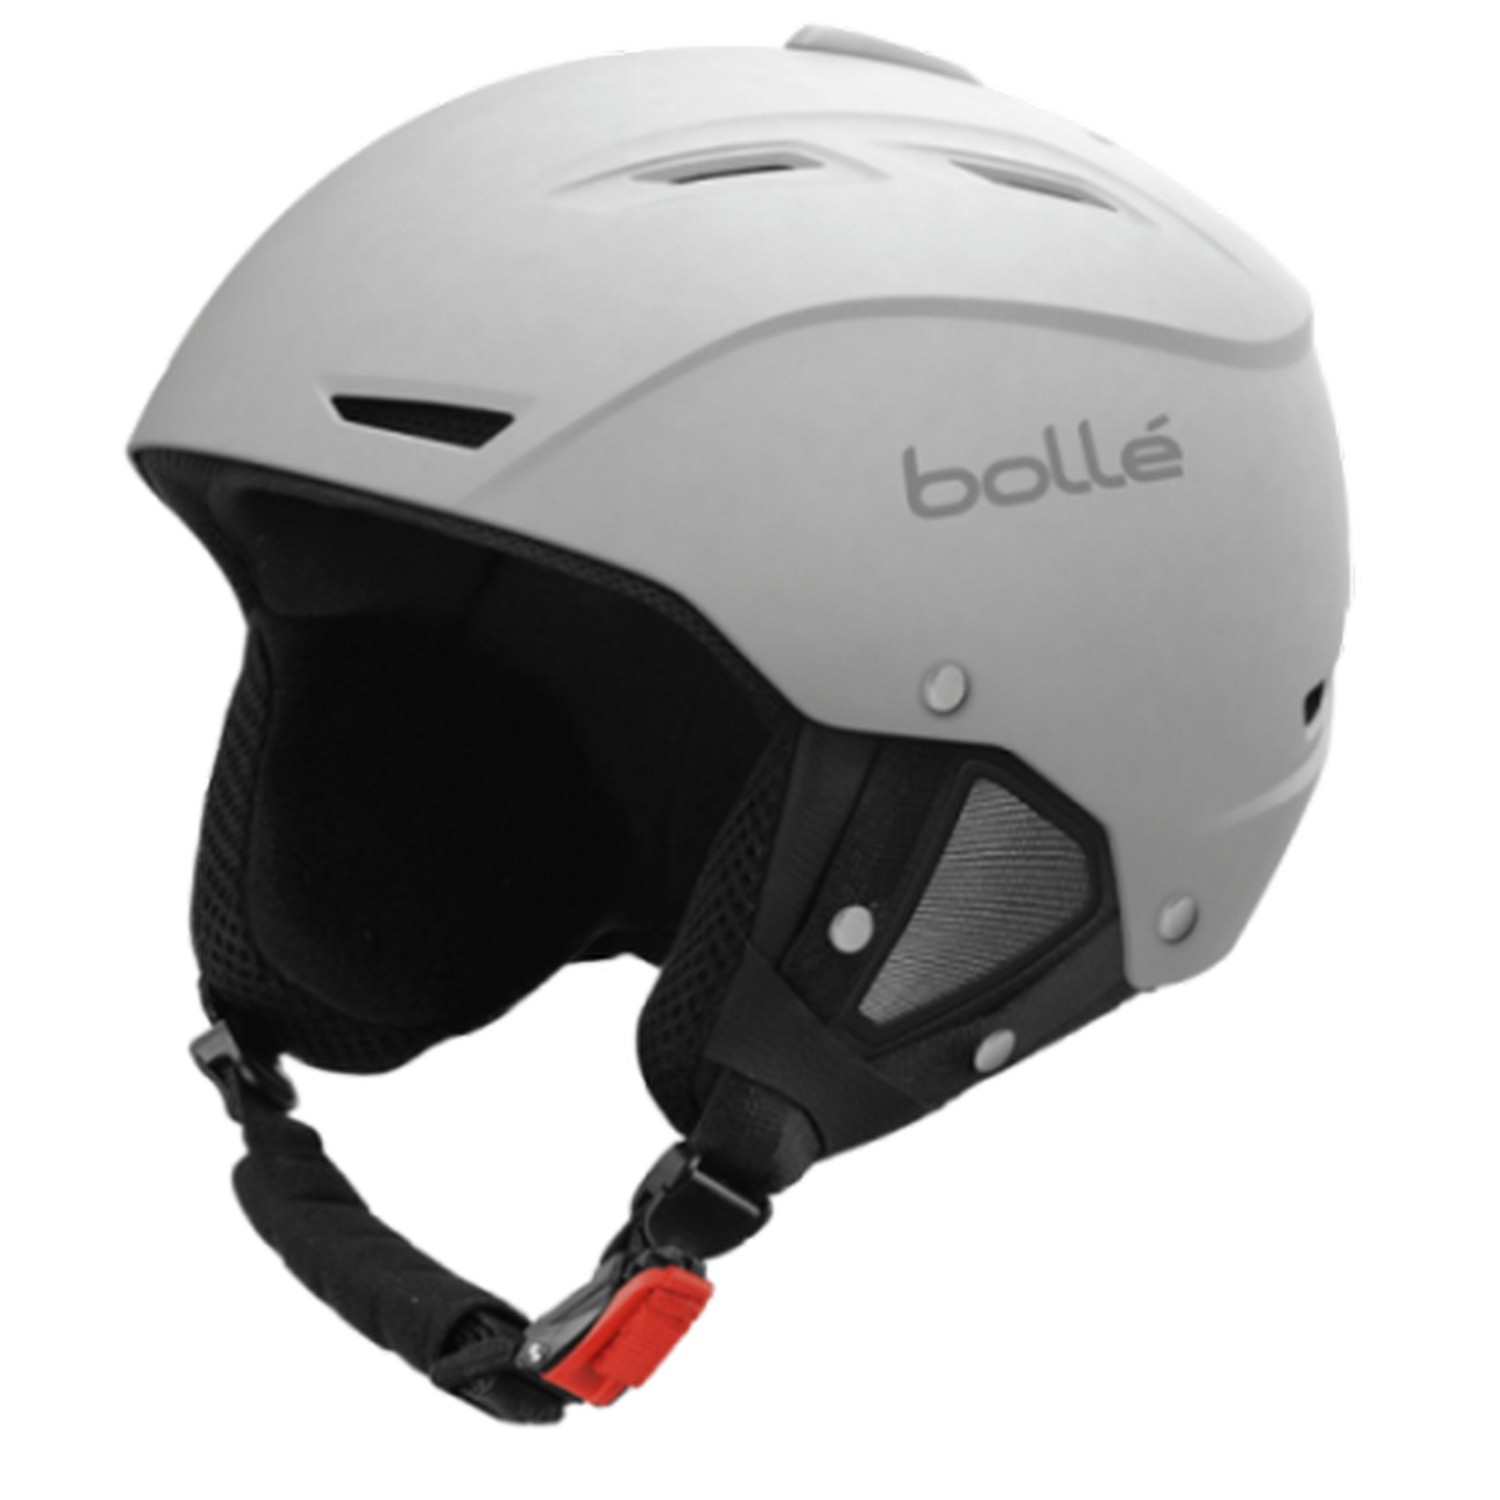 Зимний защитный шлем Bolle Backline SOFT White